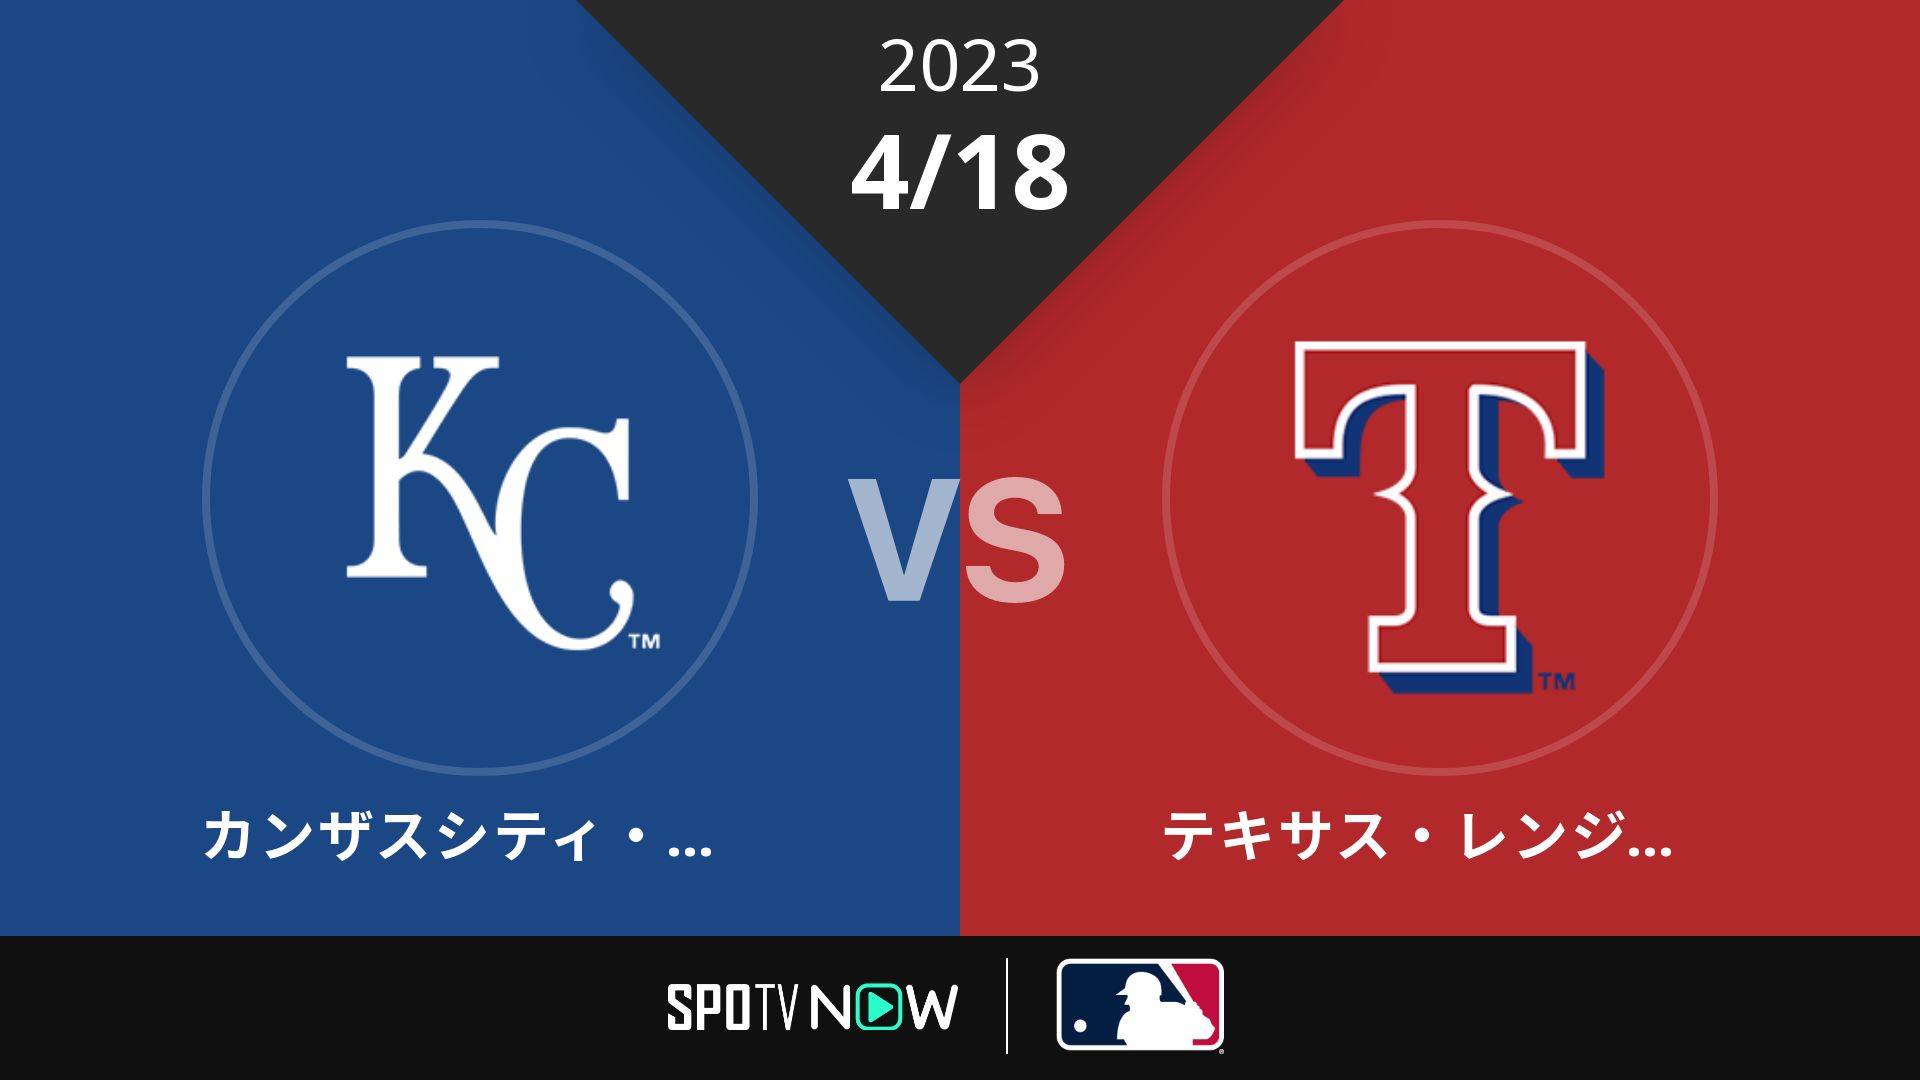 2023/4/18 ロイヤルズ vs レンジャーズ [MLB]